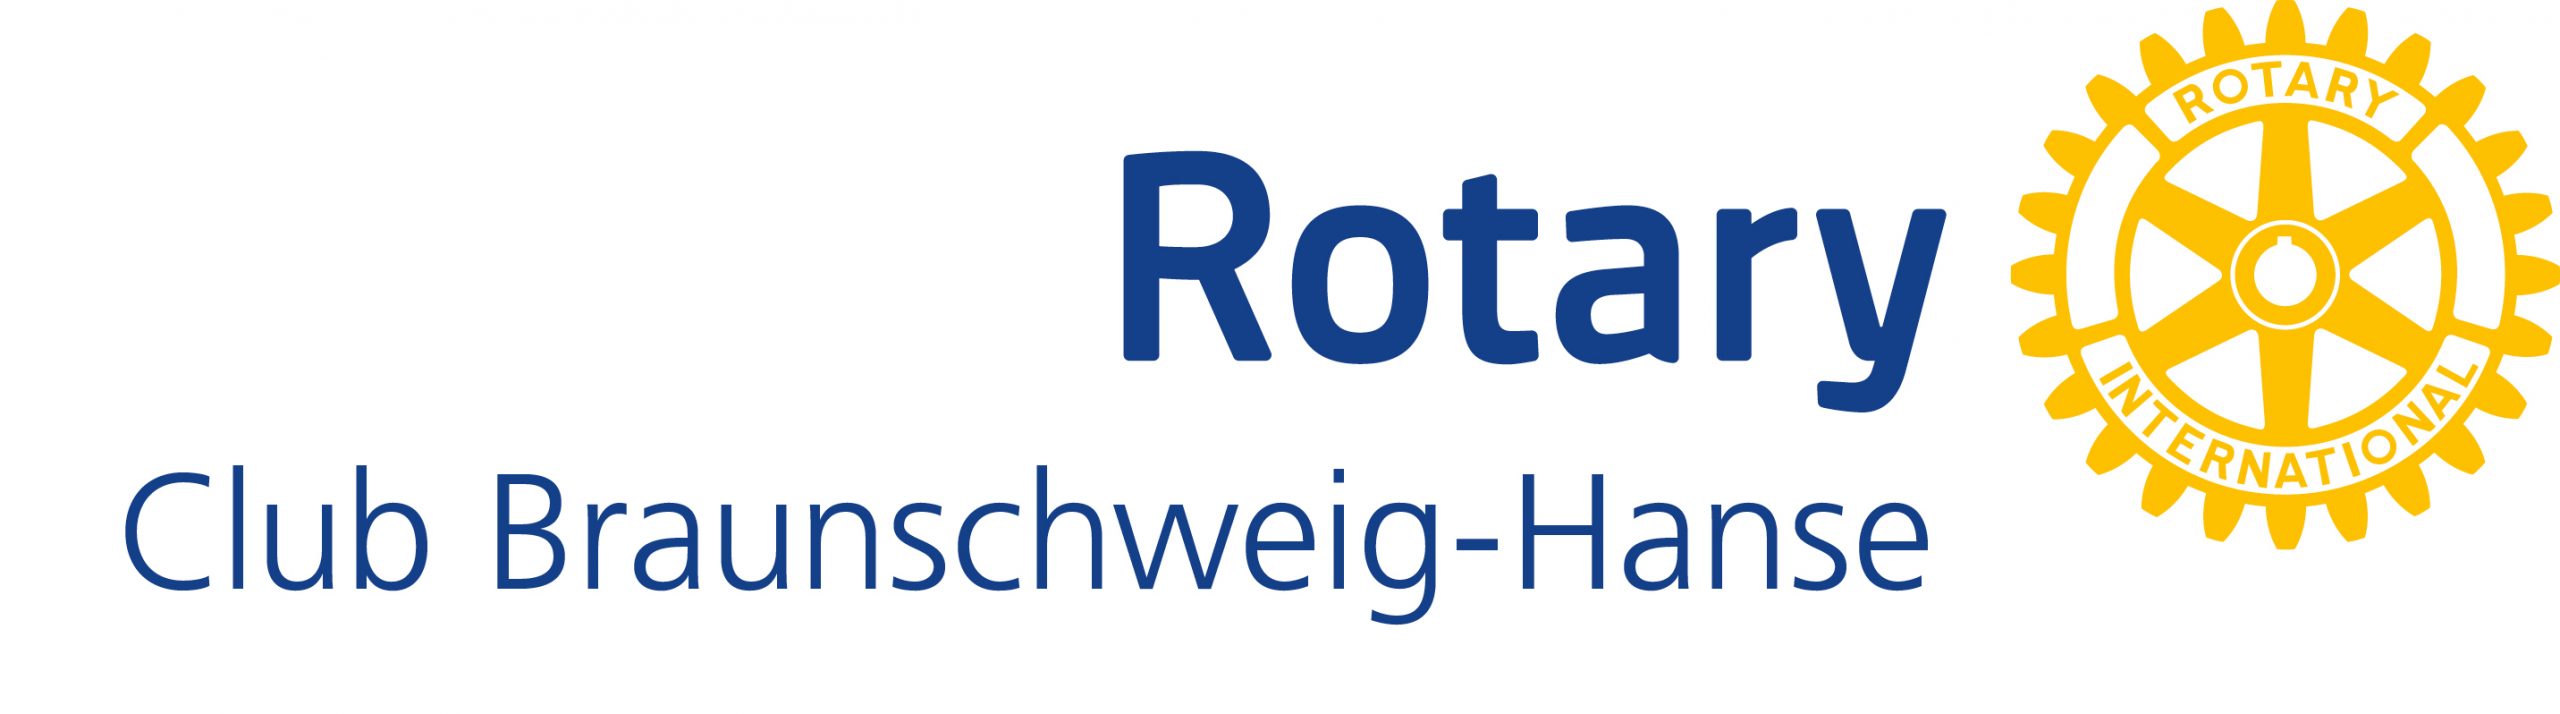 Logo RC Braunschweig Hanse 4c scaled